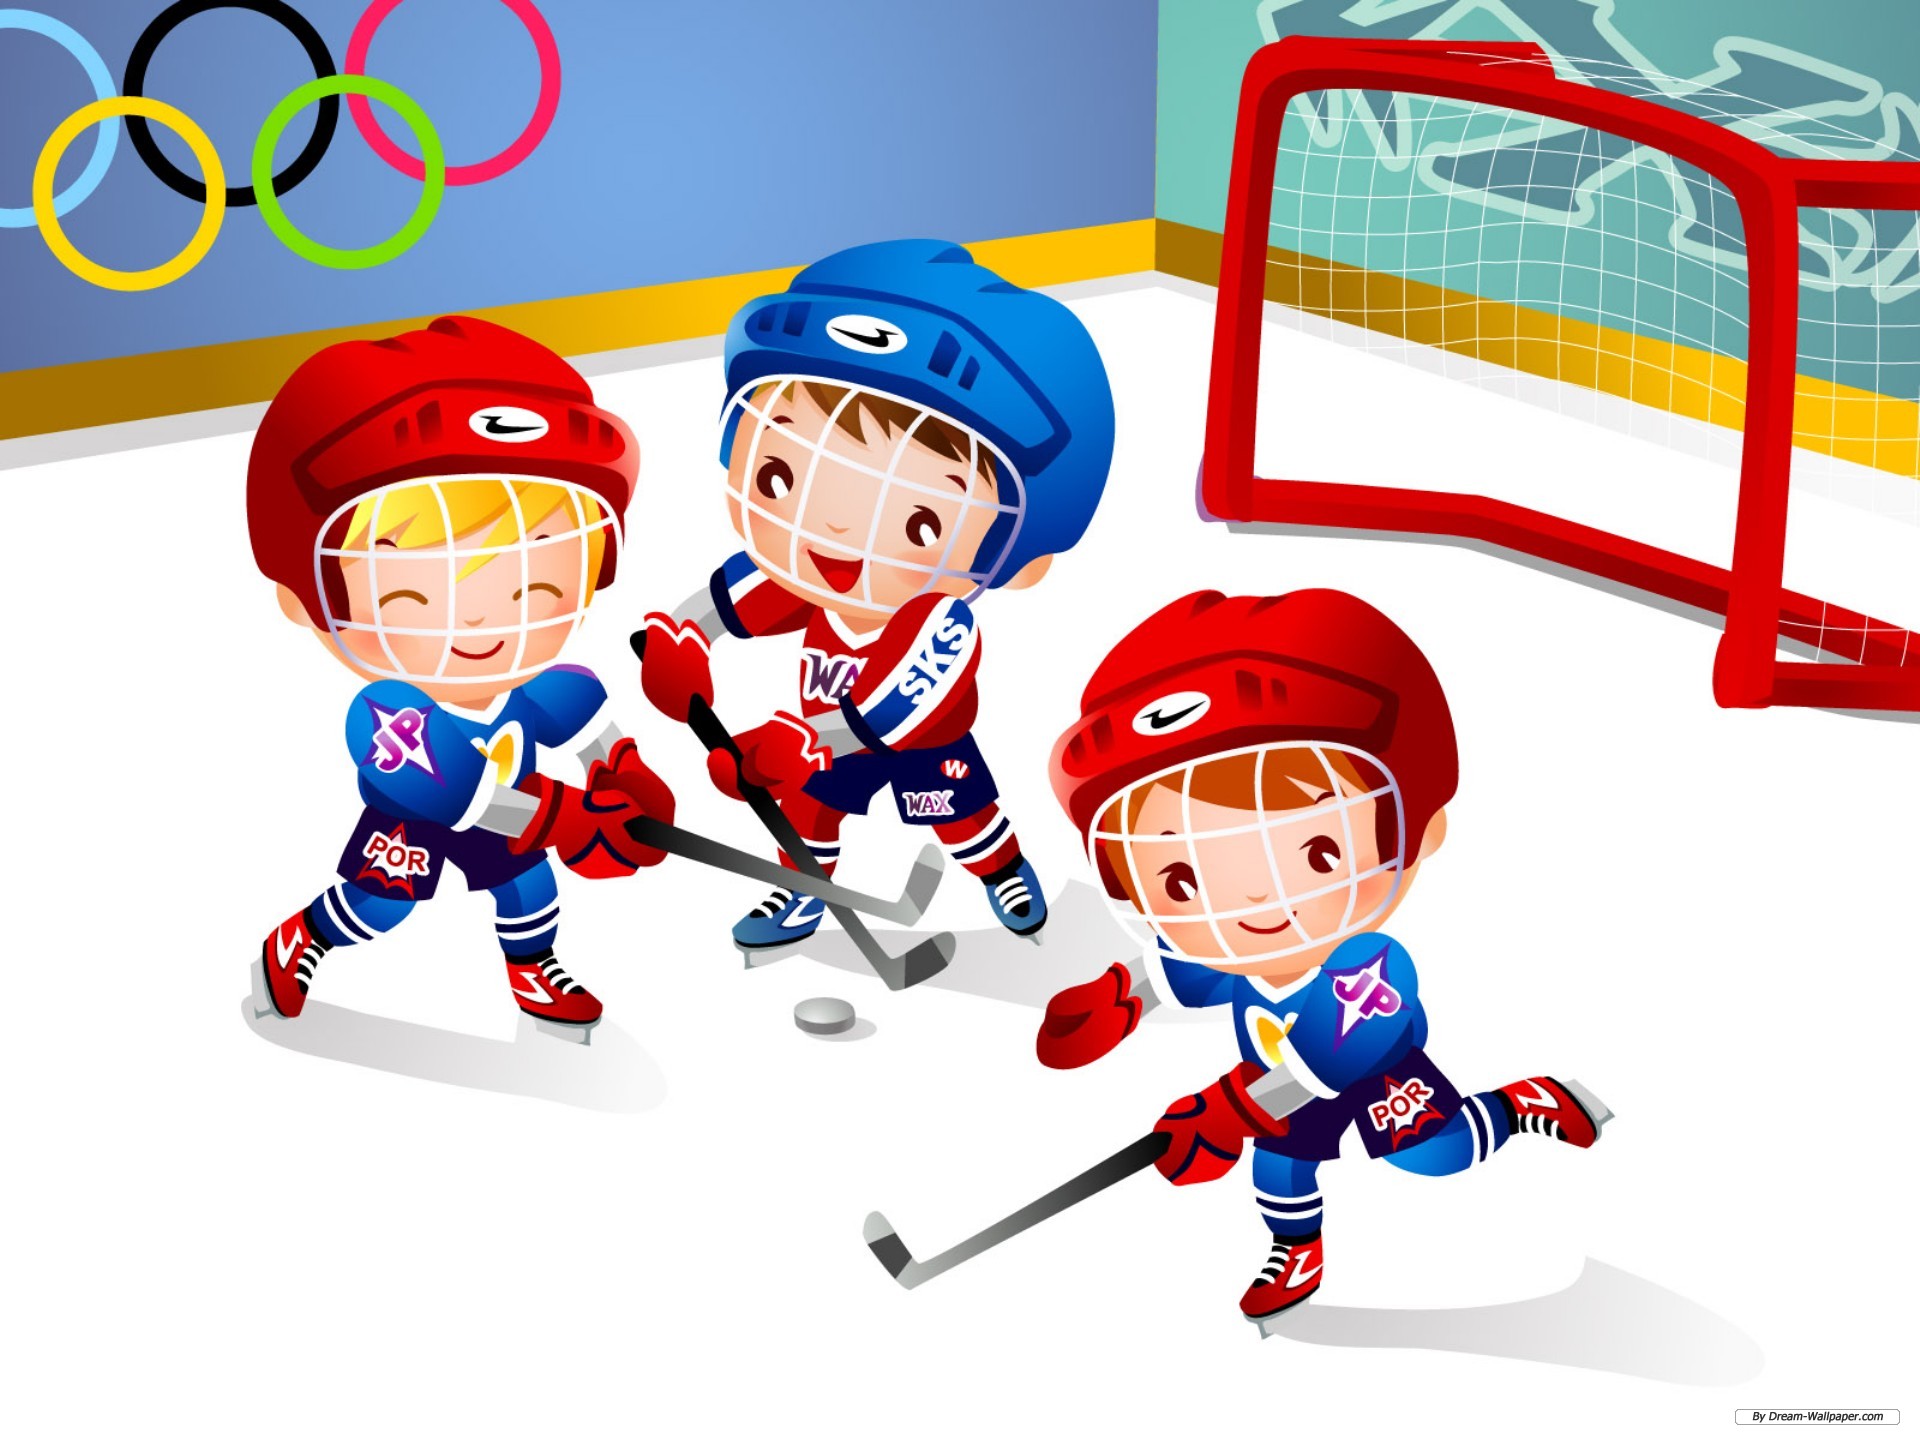 Группа про спорт. Спортивные рисунки для детей. Спорт дети. Изображения видов спорта для детей. Хоккей дети.